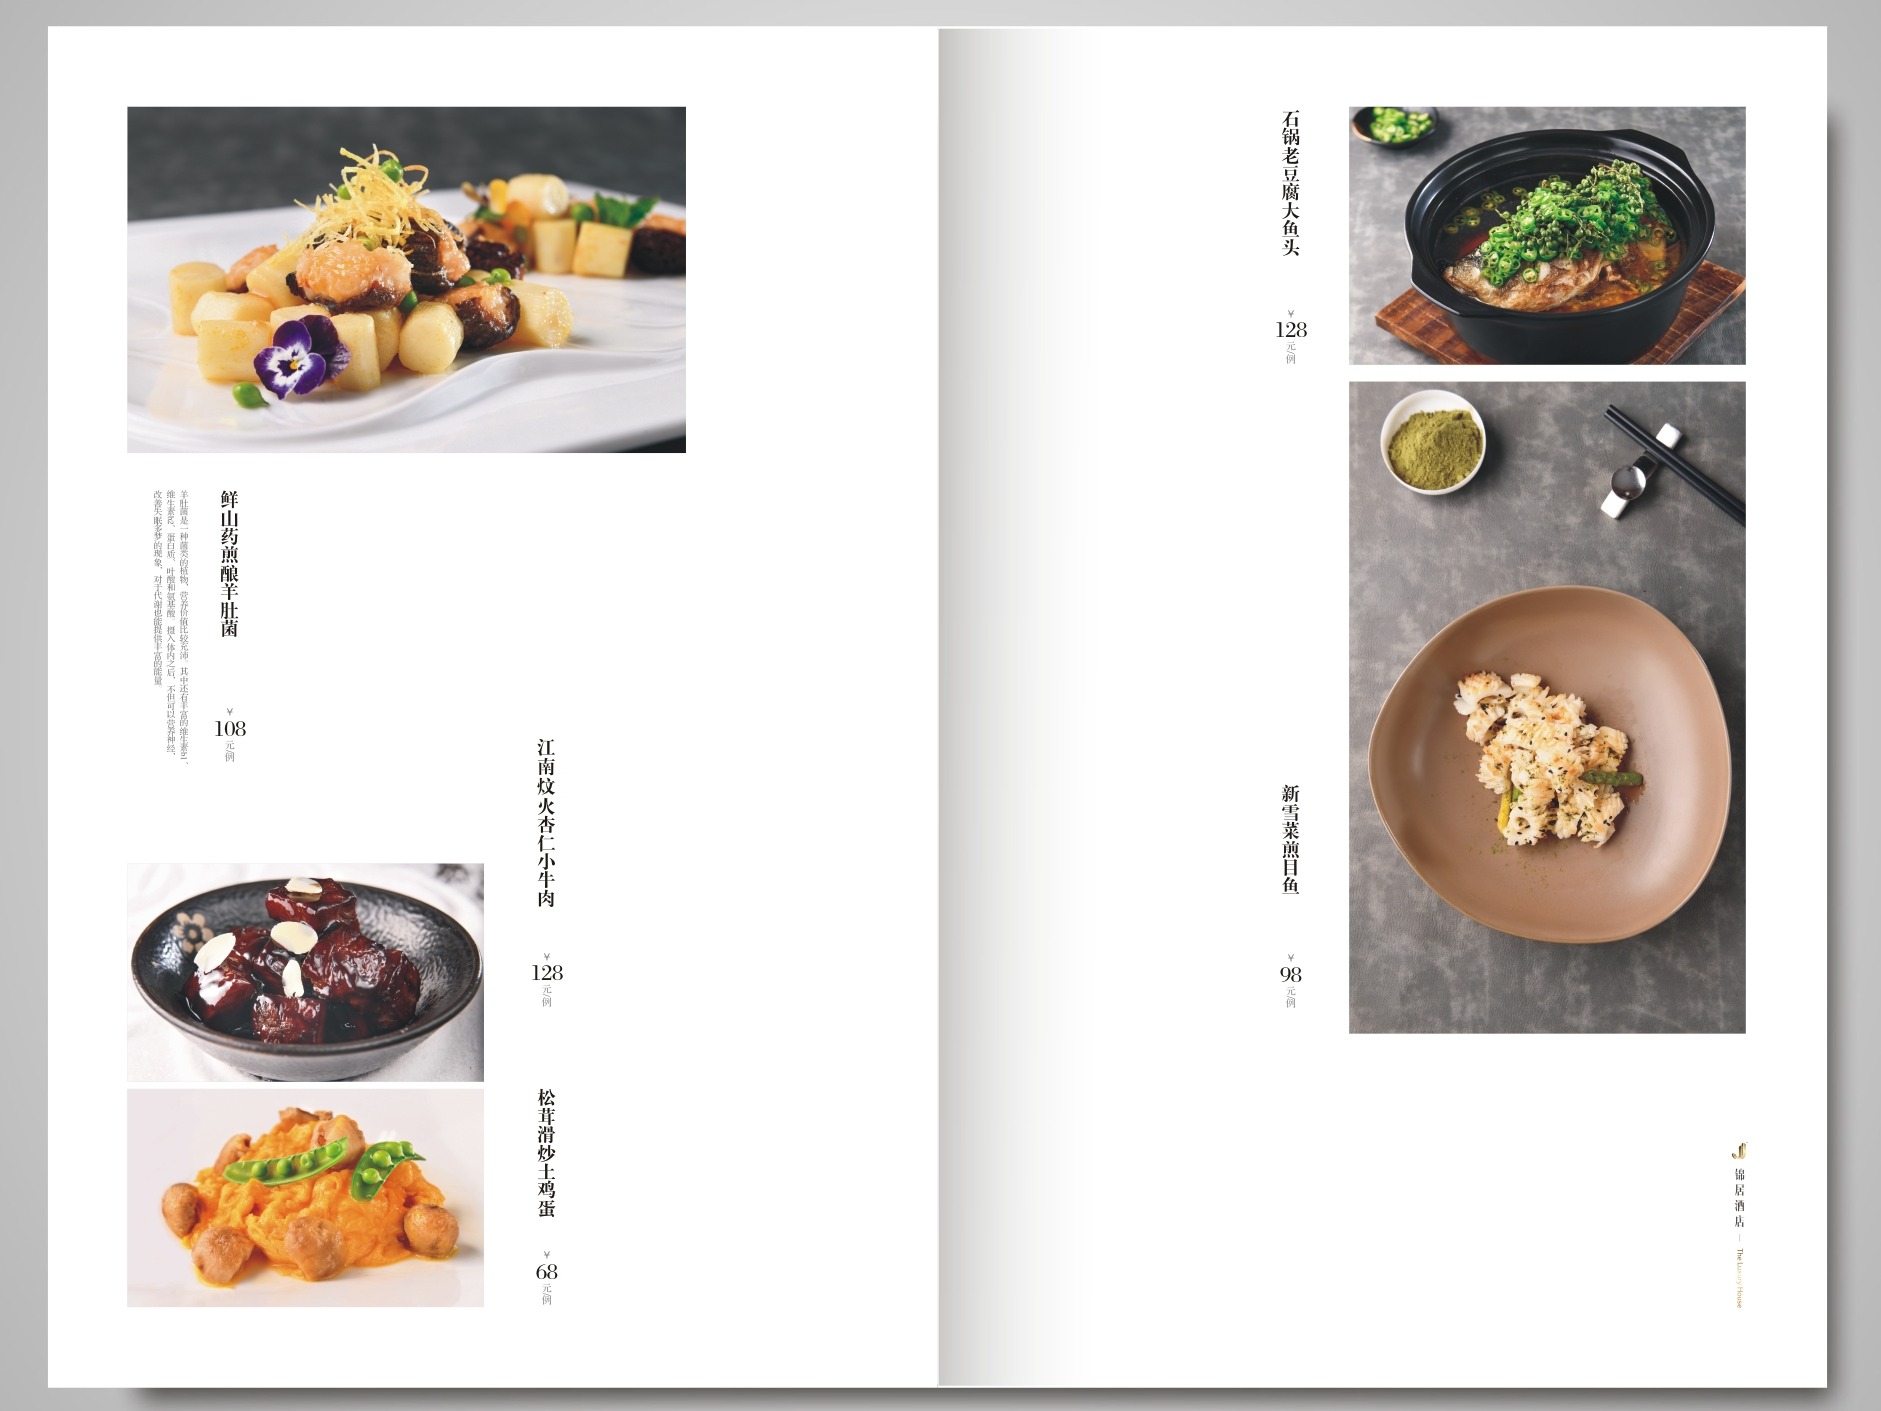 餐厅菜谱设计制作理应由厨师进行内容检测-捷达菜谱设计制作公司